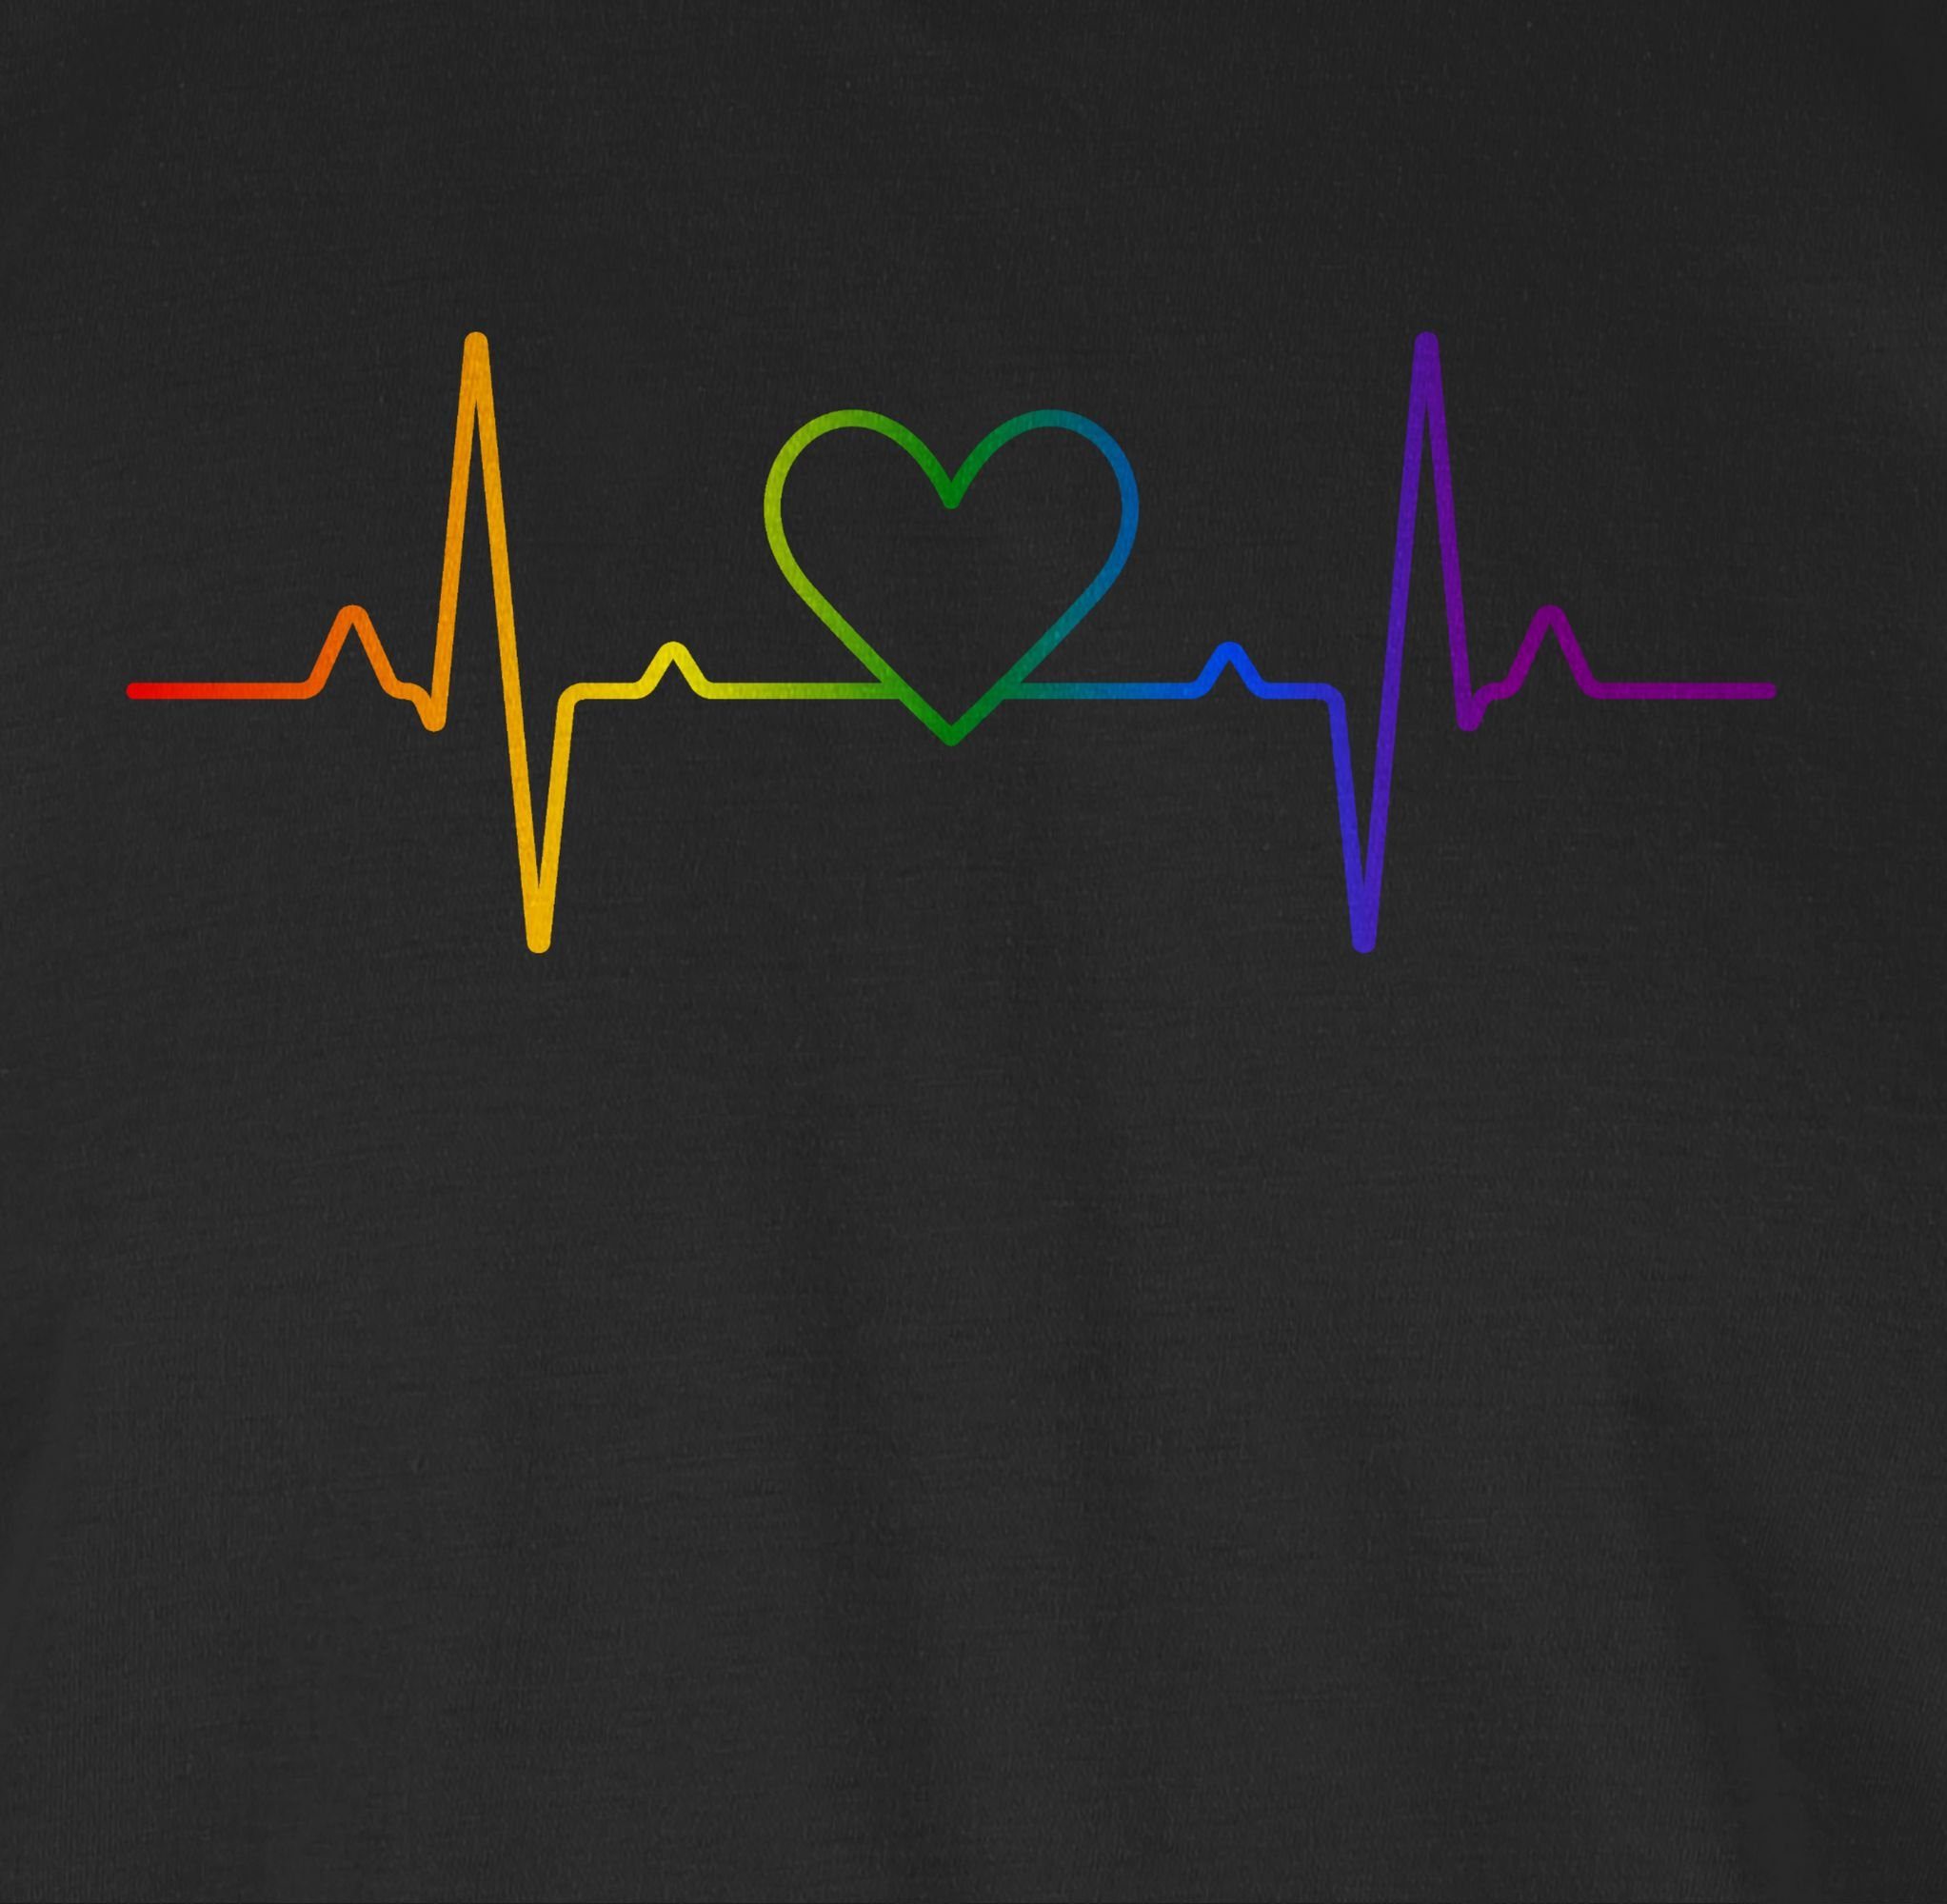 Kleidung Regenbogen 02 T-Shirt Shirtracer Pride LGBT Herzschlag Schwarz